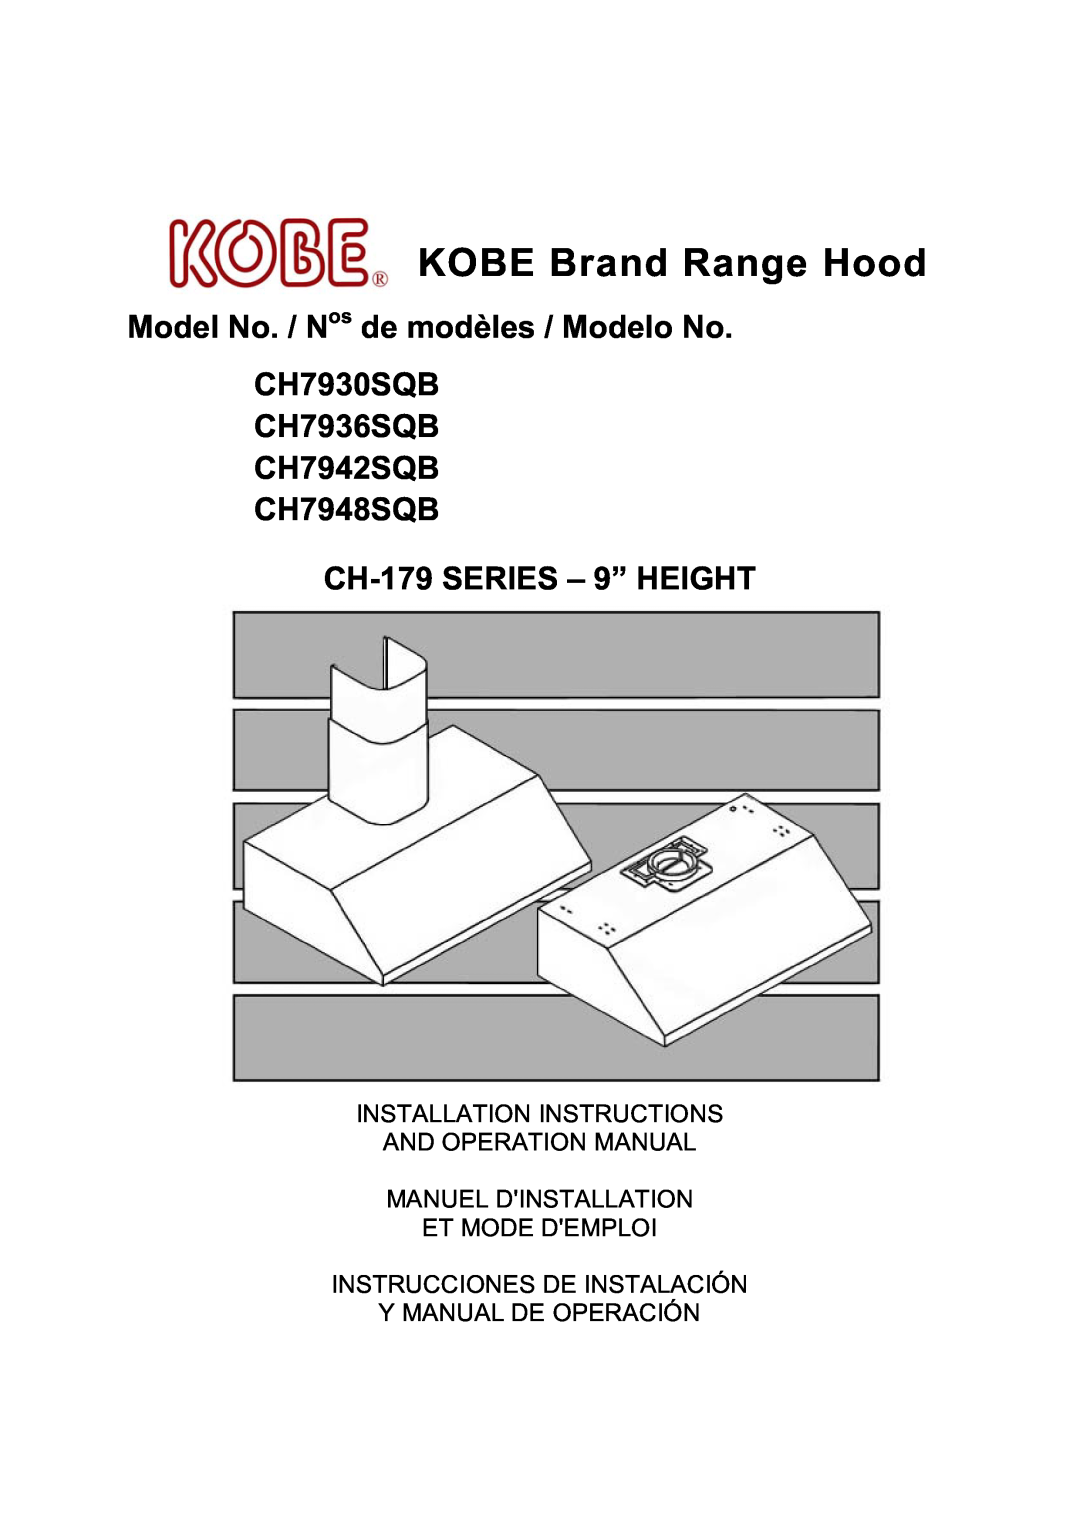 Kobe Range Hoods CH7942SQB installation instructions Installation Instructions And Operation Manual, Y Manual De Operación 